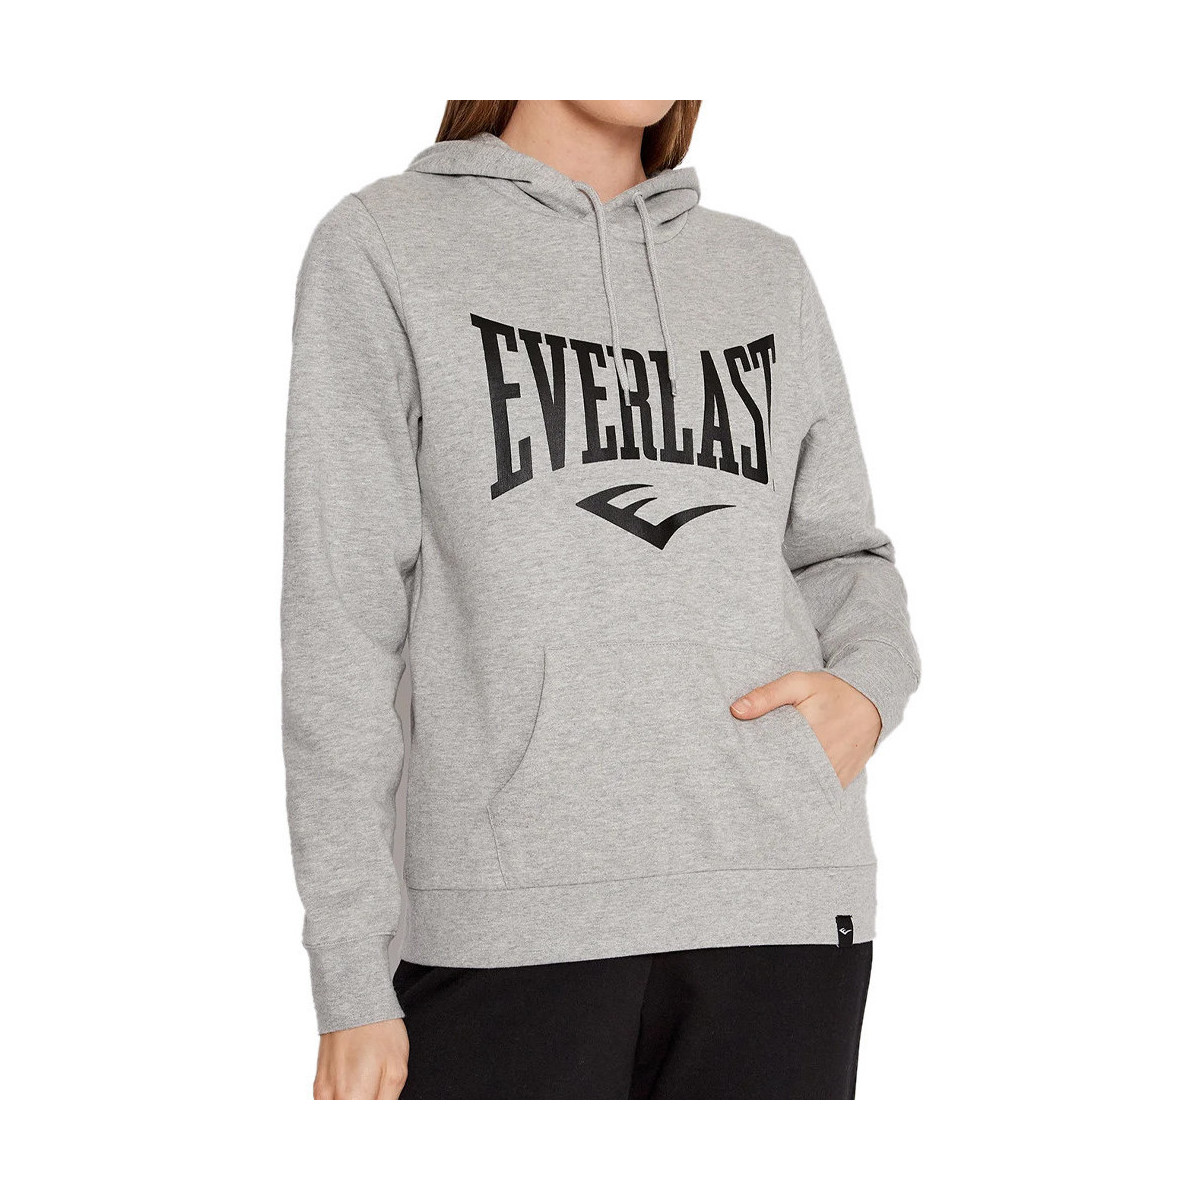 Kleidung Damen Sweatshirts Everlast 808381-50 Grau